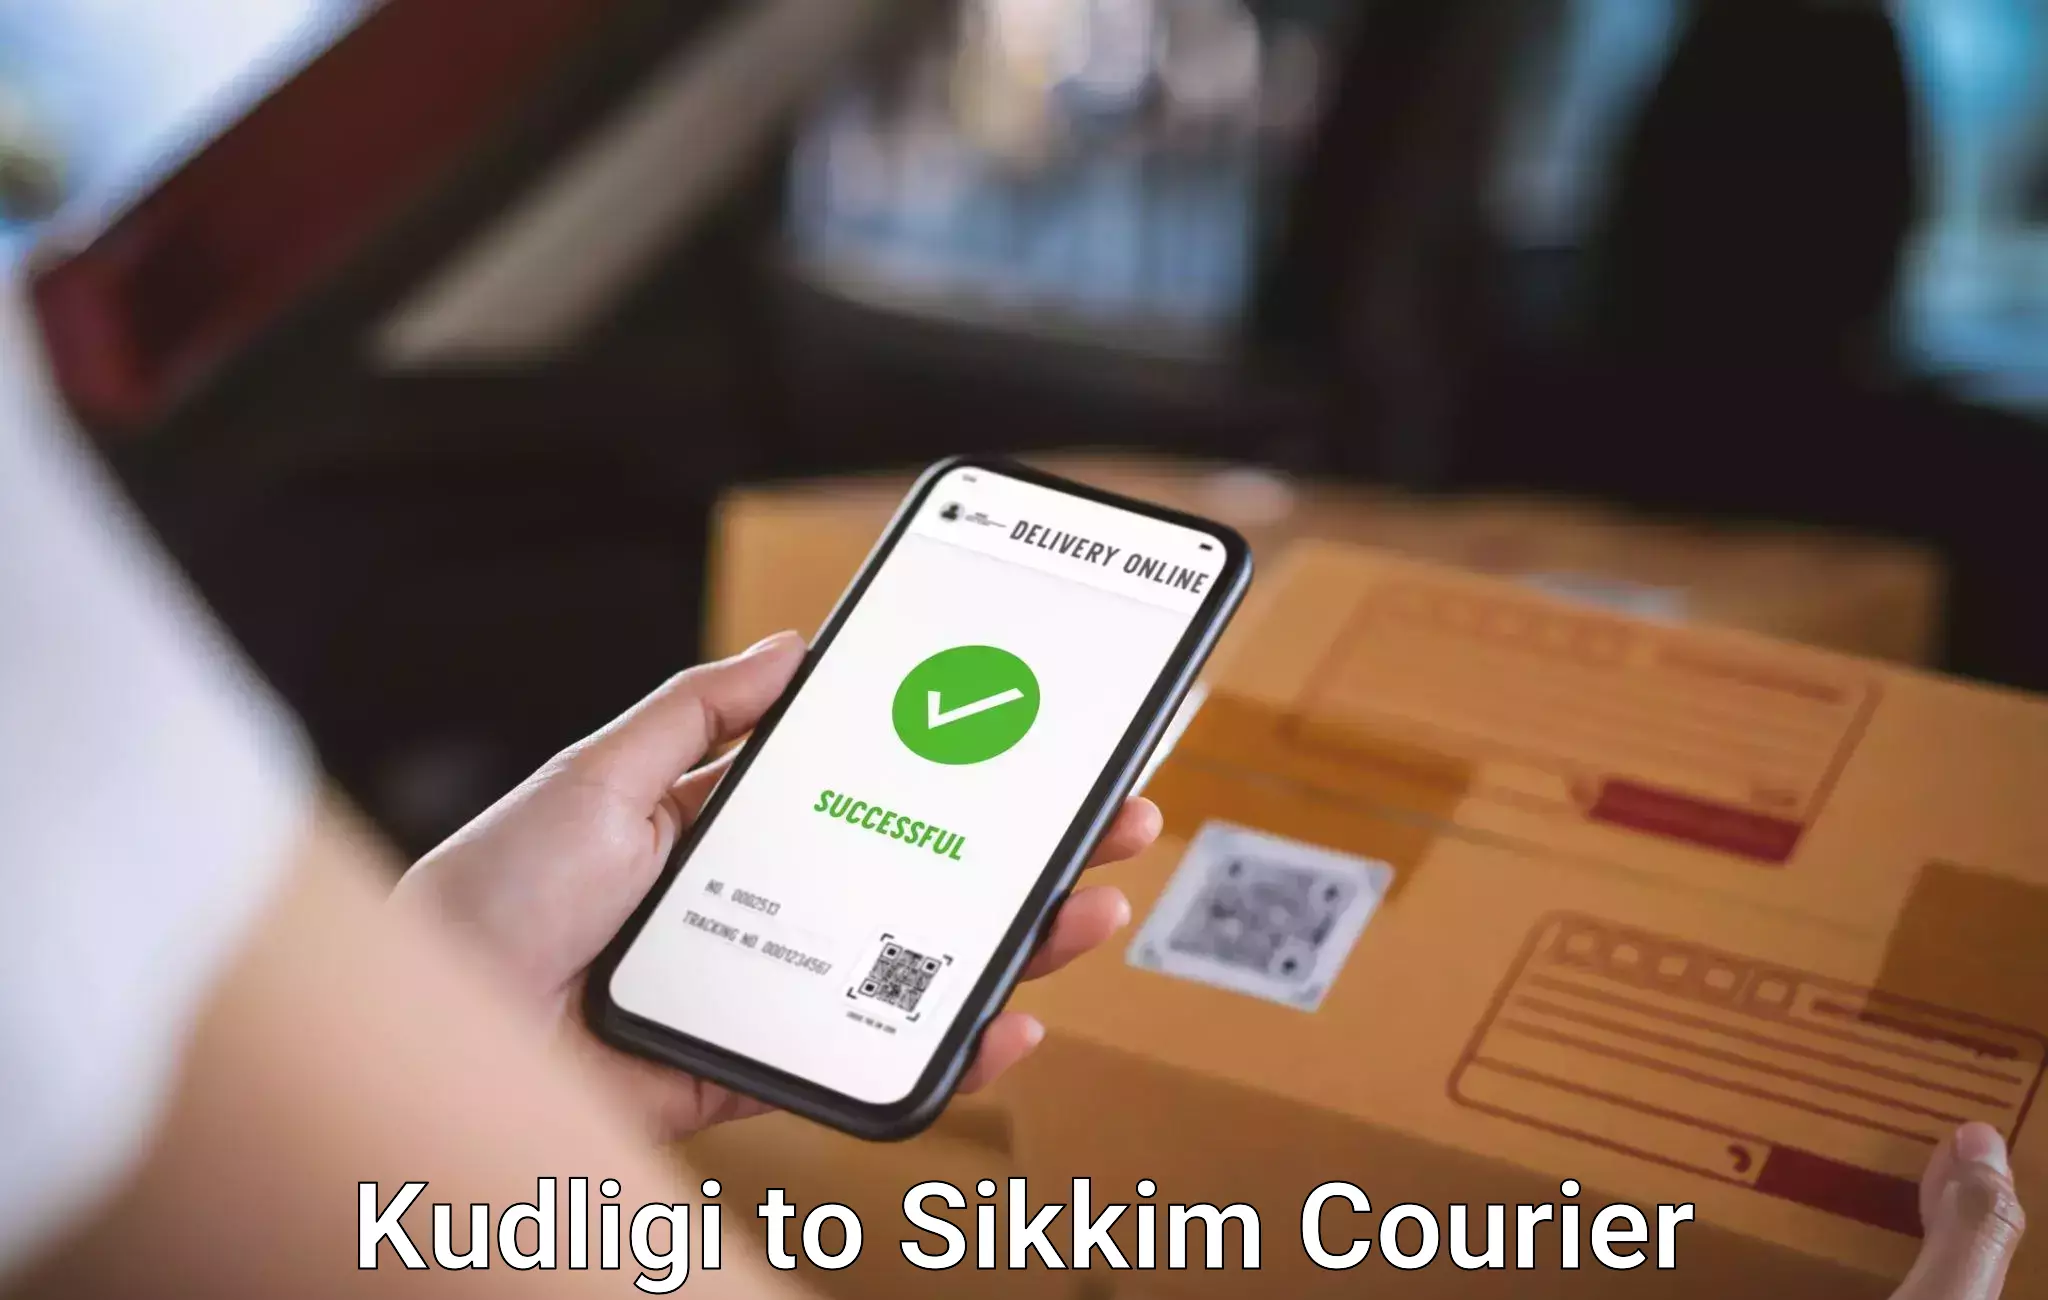 Door to door luggage delivery Kudligi to Sikkim